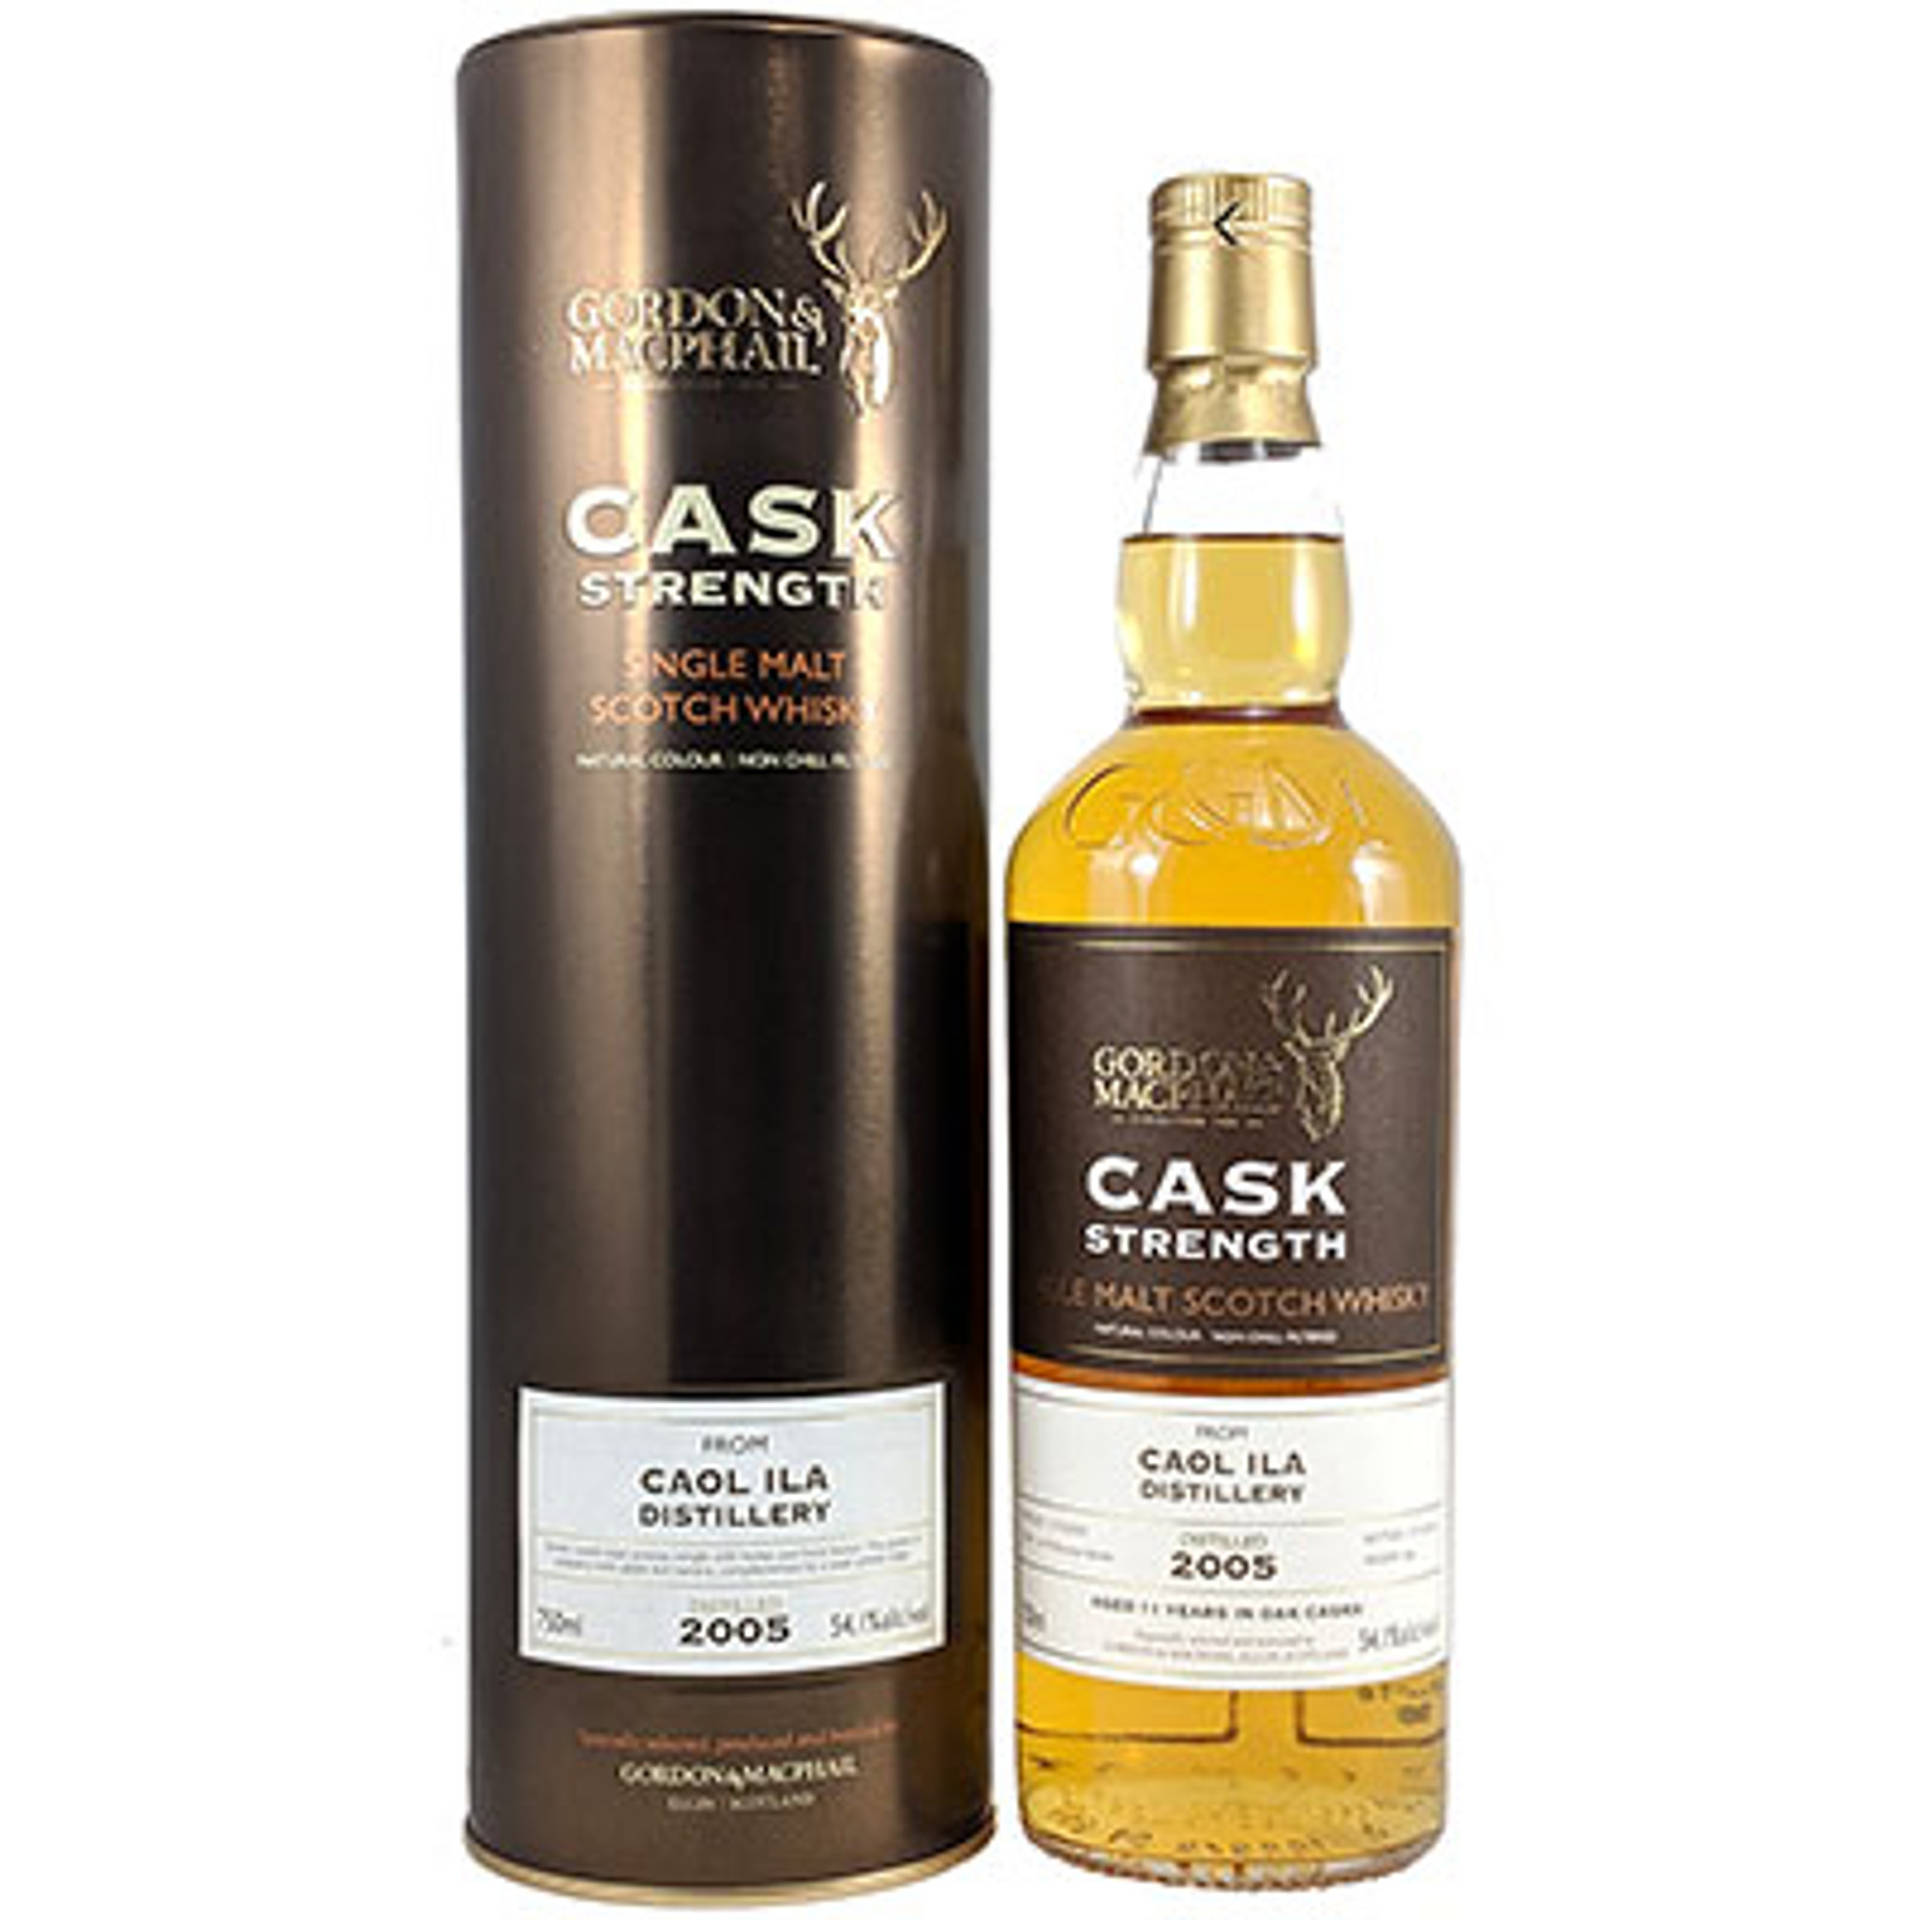 Breathtaking view of a cask strength bottle of Caol Ila Single Malt Scotch Whisky Wallpaper